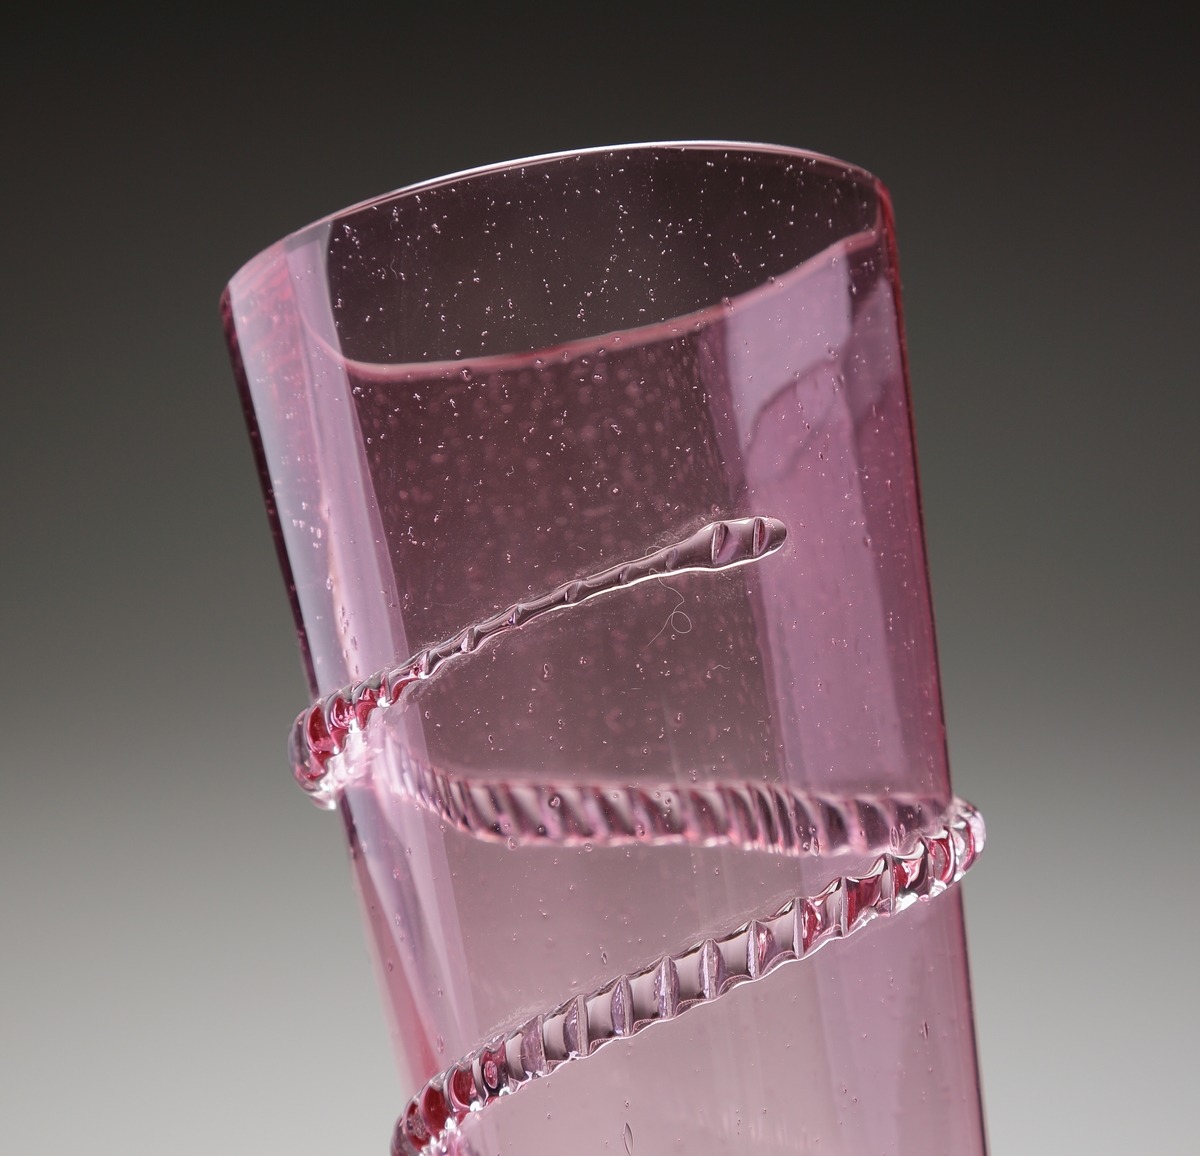 Vas. eller möjligen pokal.
Stilen på glasen är gjord så att den ska se ålderdomlig ut.
Hög rosa, konisk vas med spunnen och naggad ofärgad glastråd. 
Foten rosa  och konisk med markerade ränder.